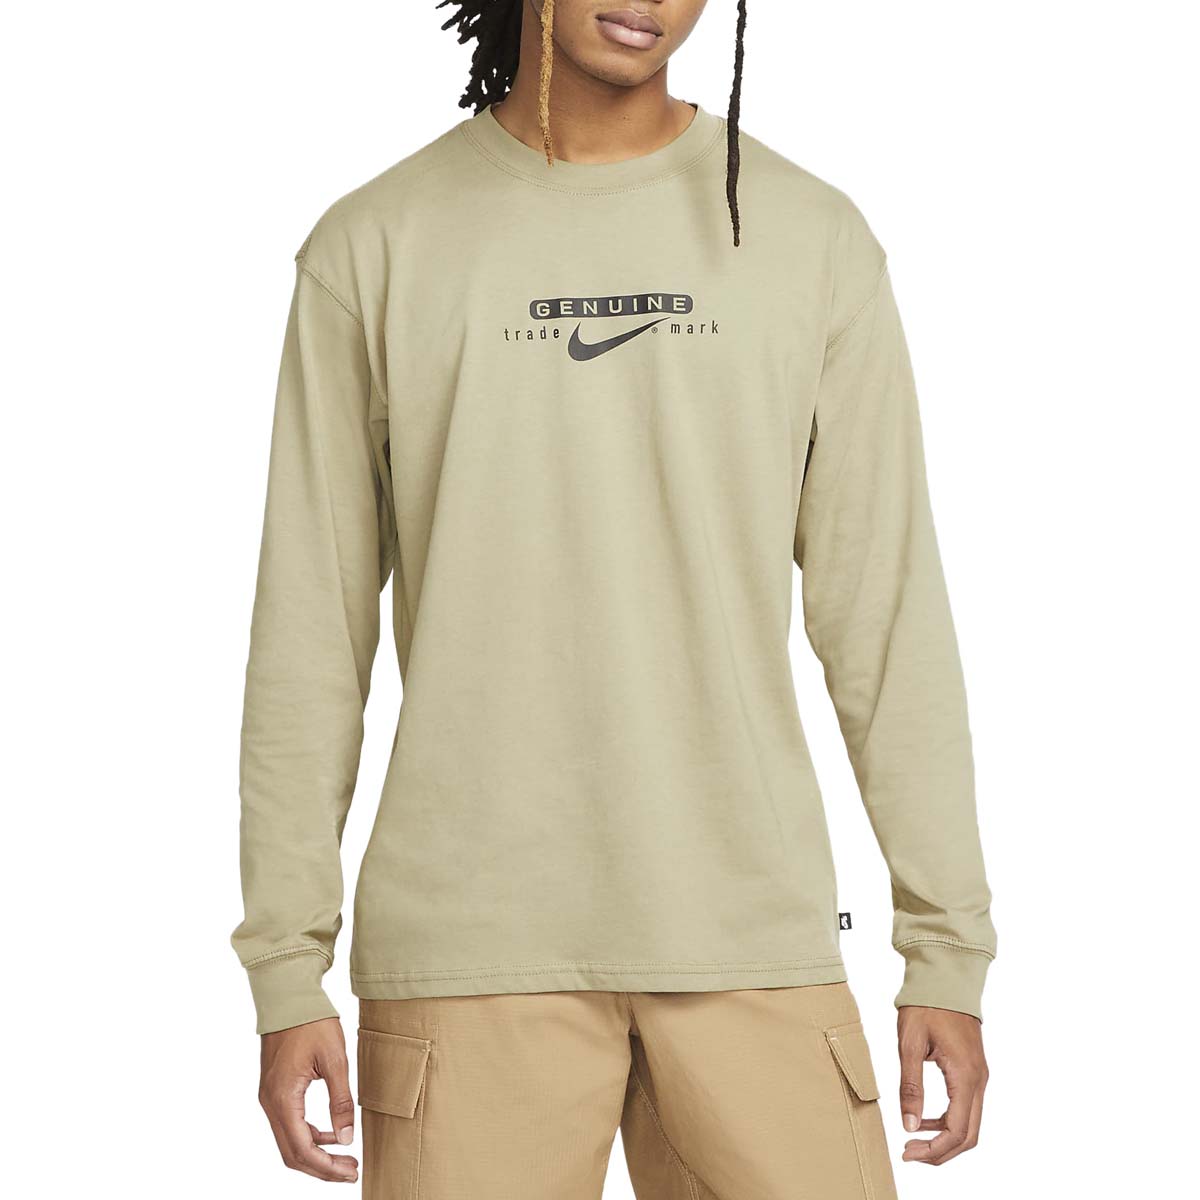 Nike SB Genuine Long Sleeve T-Shirt - Neutral Olive image 2